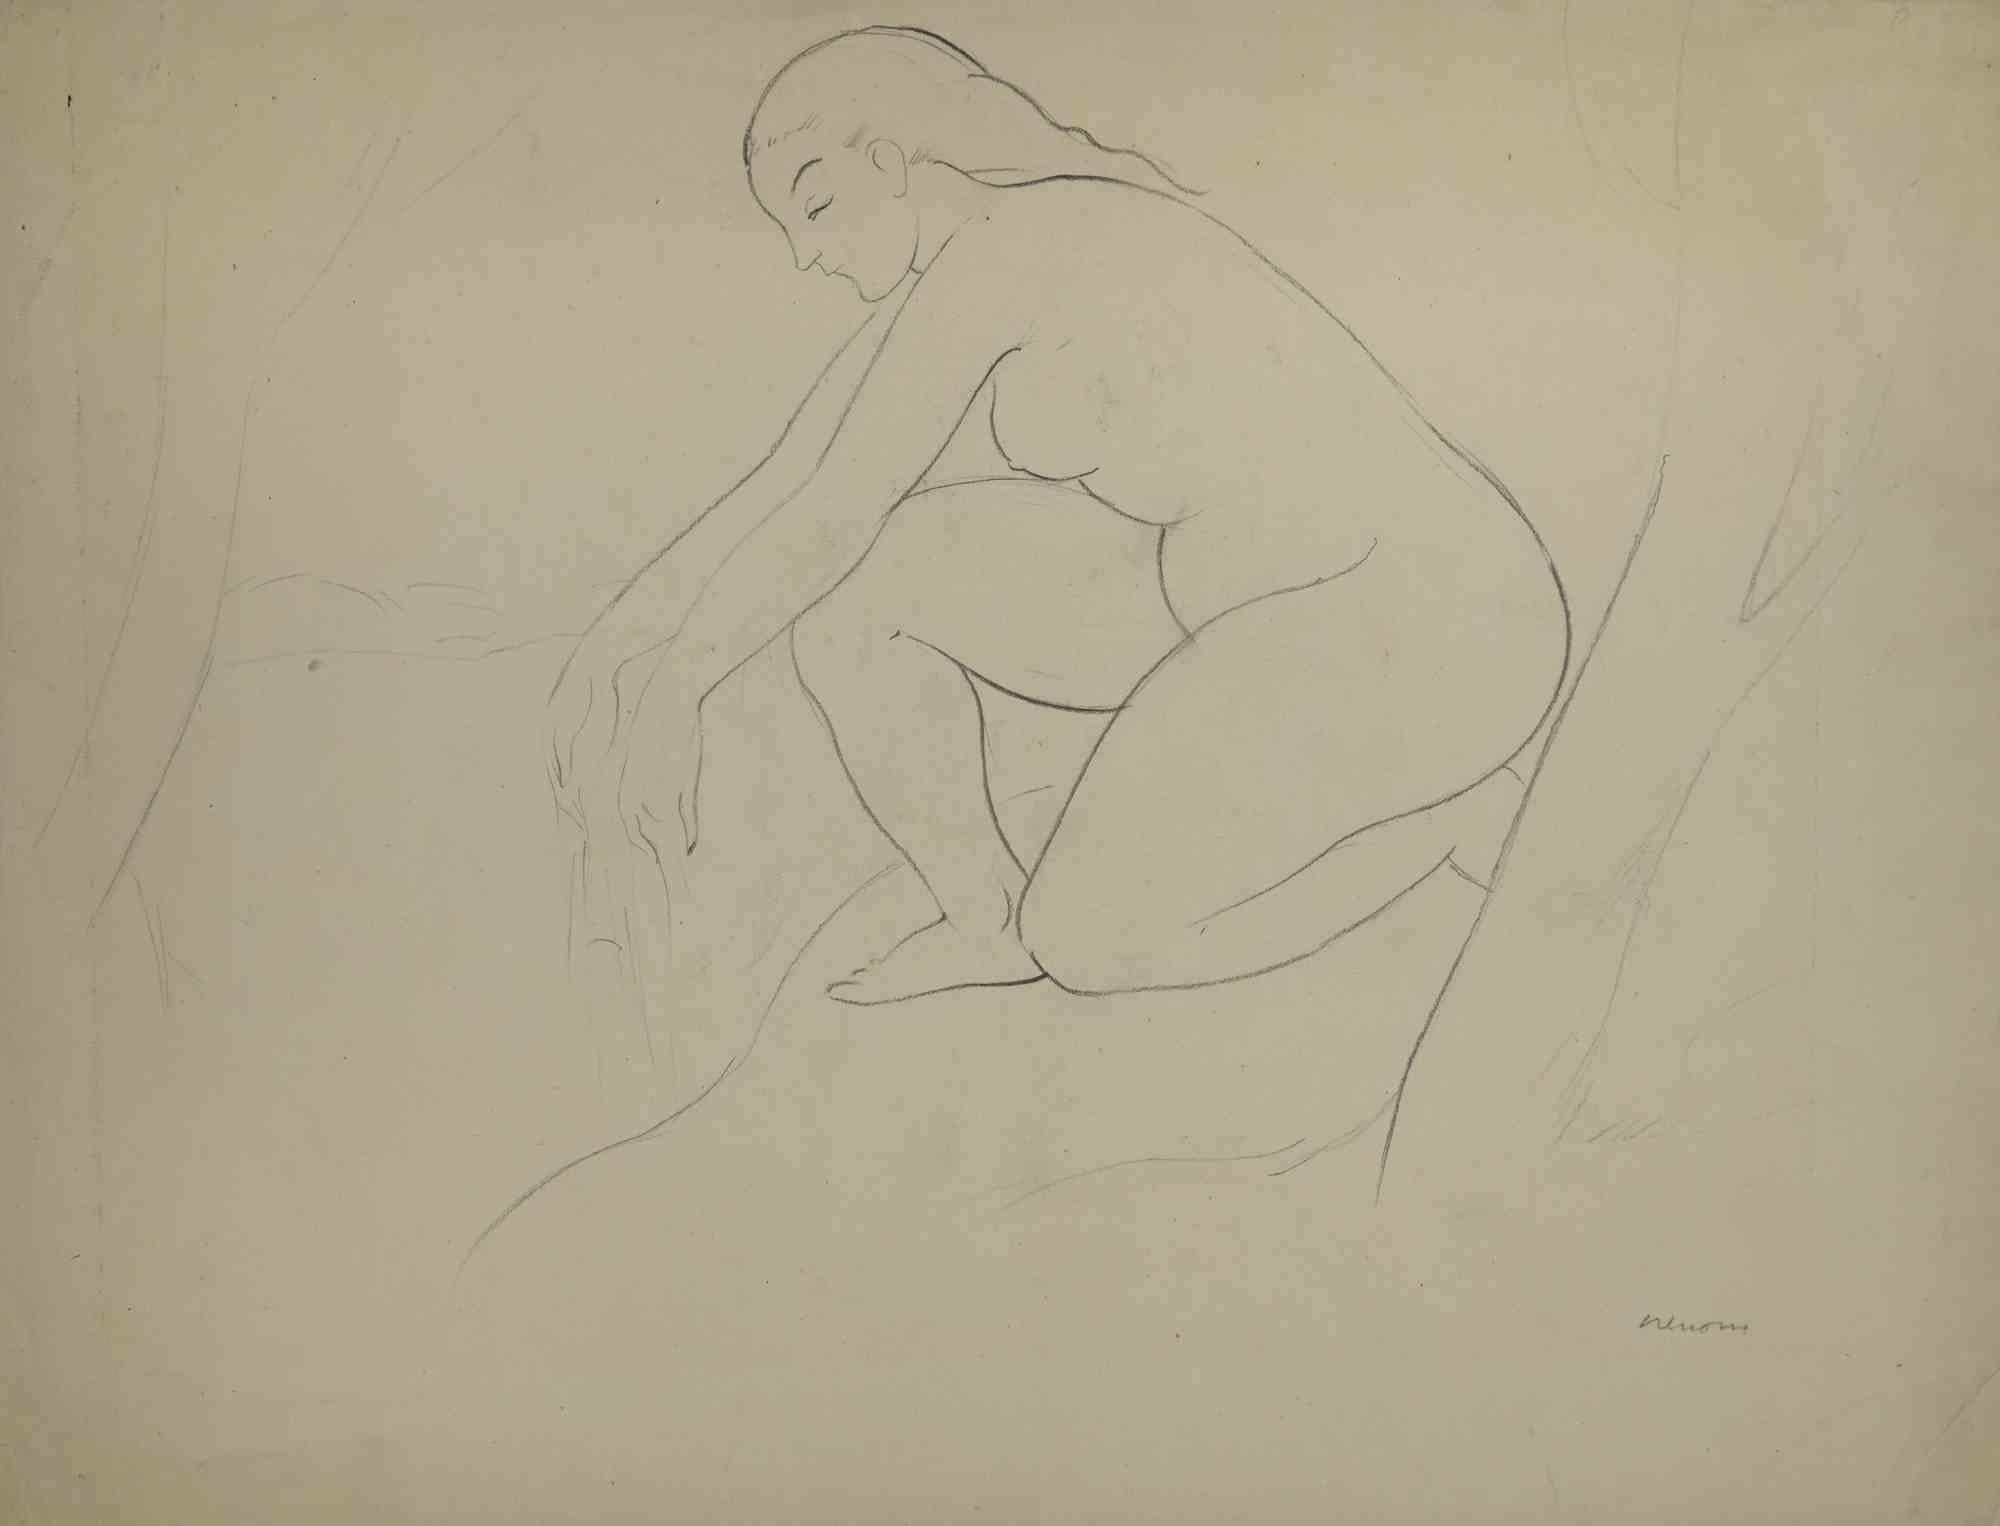 Untitled ist ein Kunstwerk des spanischen Künstlers Miquel Renom (1912-1984).

Zeichnung auf Papier. Handsigniert in der rechten Ecke.

Der Künstler will eine ausgewogene Komposition durch Präzision und kongruente B./W. Farben definieren.

Gute